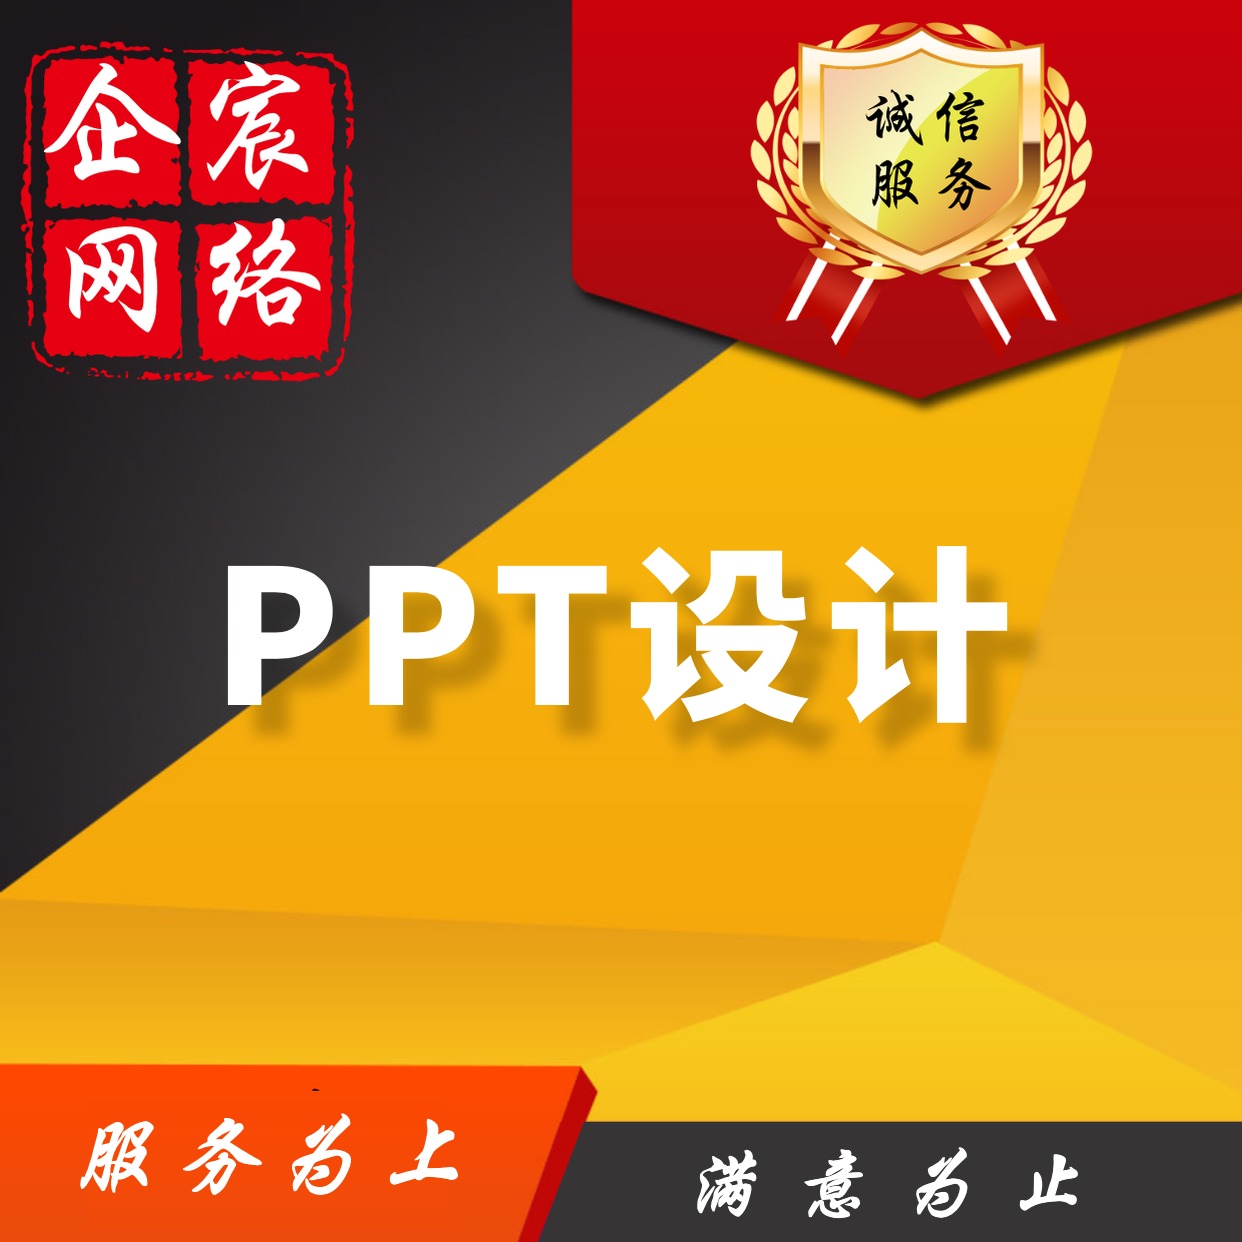 【PPT策划】PPT策划制作设计排版美化PPT模版路演制作